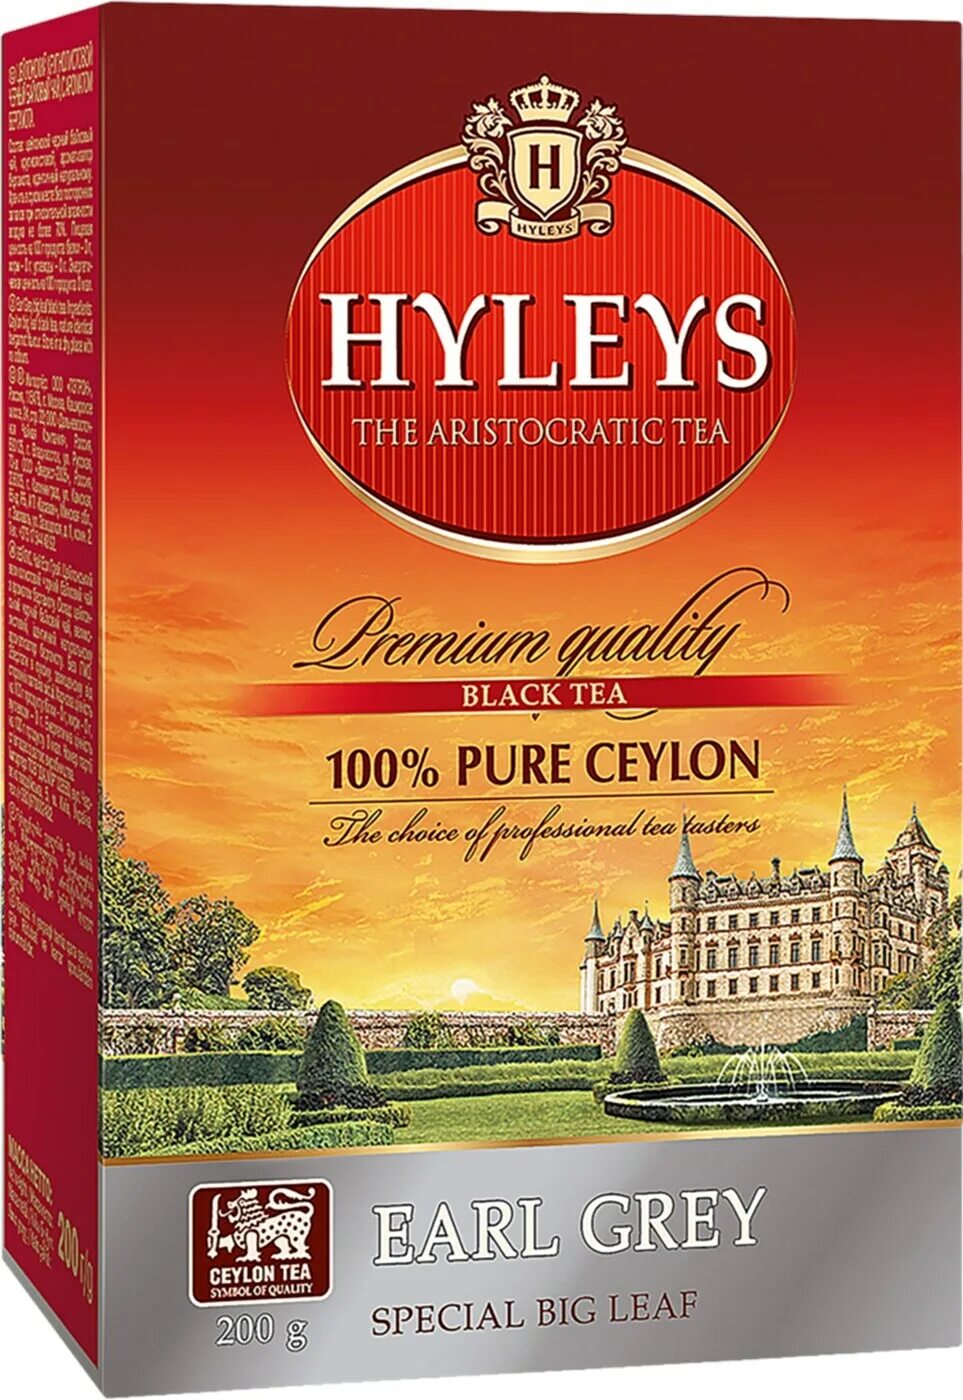 Чай hyleys купить. Чай черный hyleys Эрл грей. Hyleys чай с бергамотом. Чай черный hyleys английский аристократический байховый листовой. Чай черный hyleys / Хэйлис Earl Grey, c бергамотом 100 грамм.